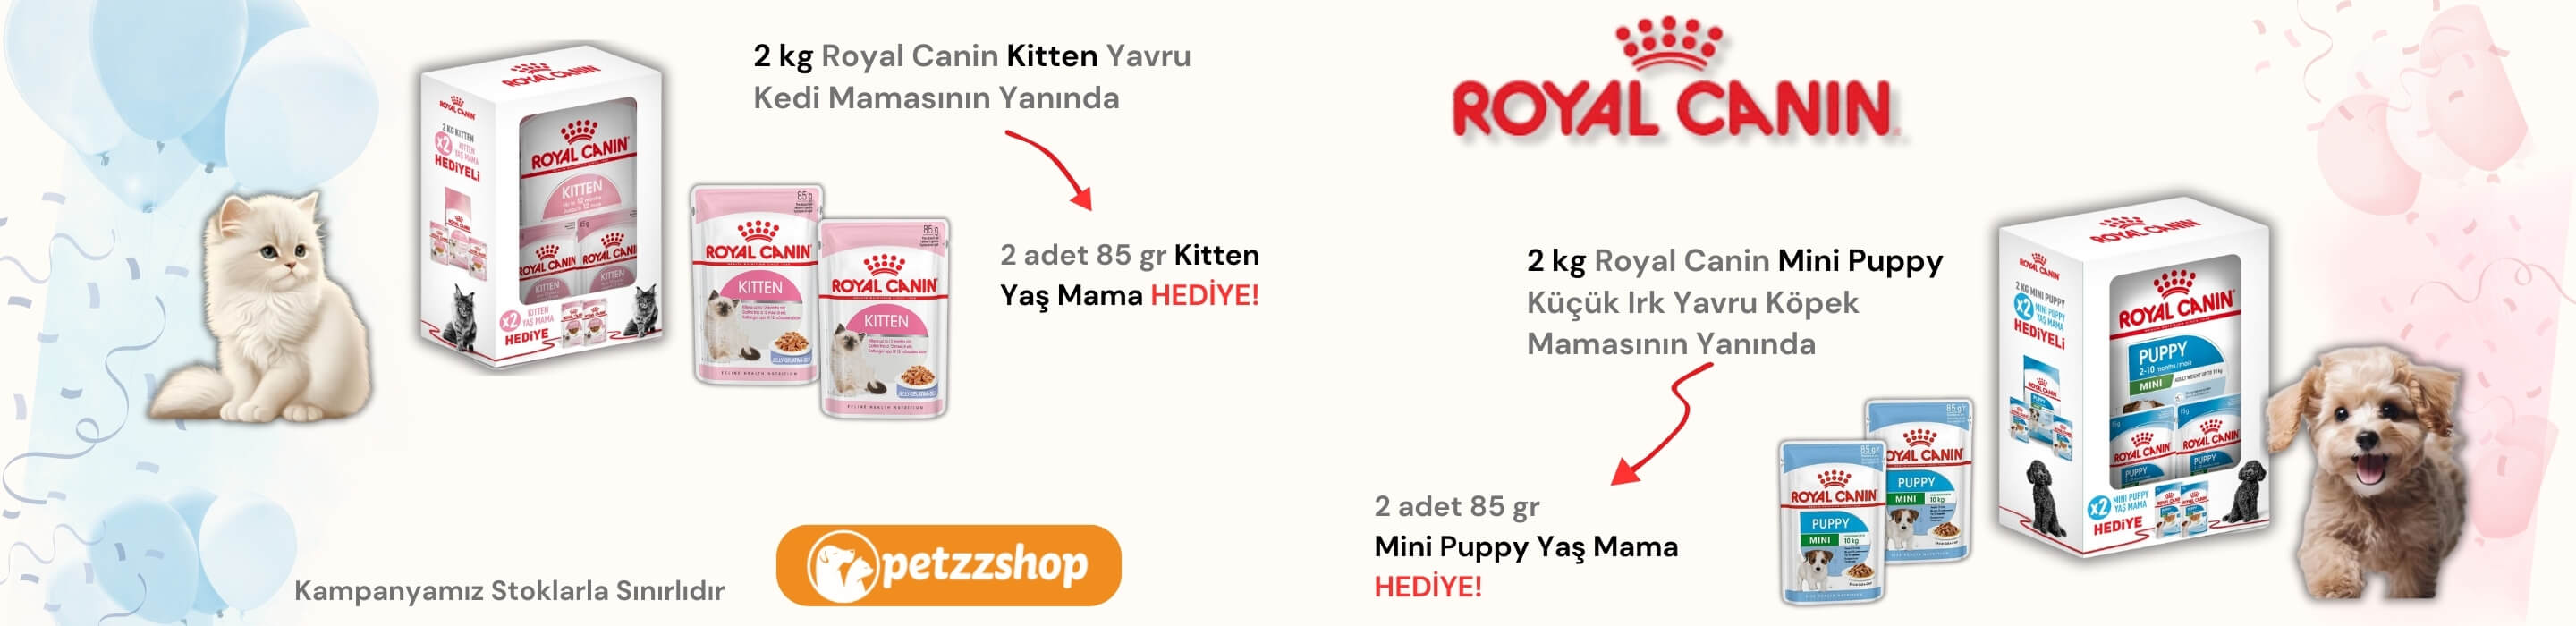 Royal Canin Paket Ürünler